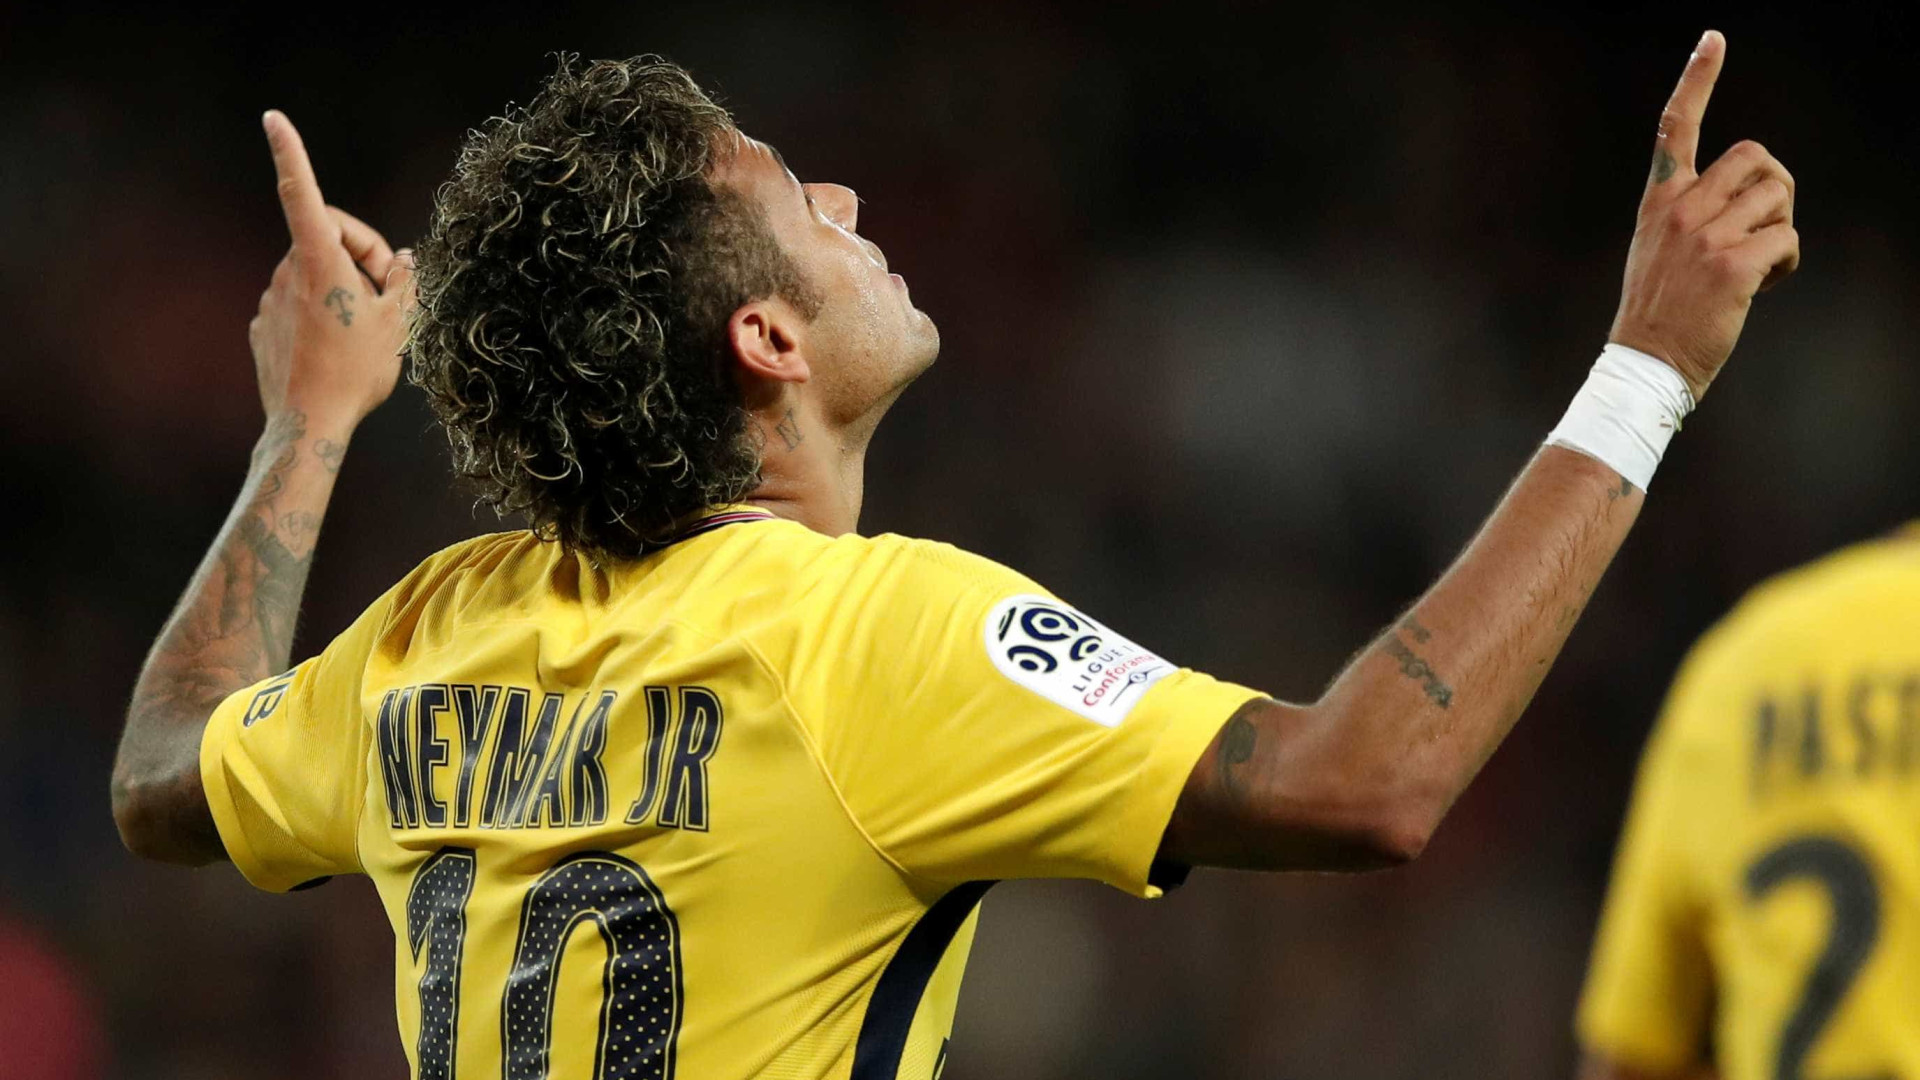 Resumão da rodada: Neymar estreia com gol e Real vence Barcelona